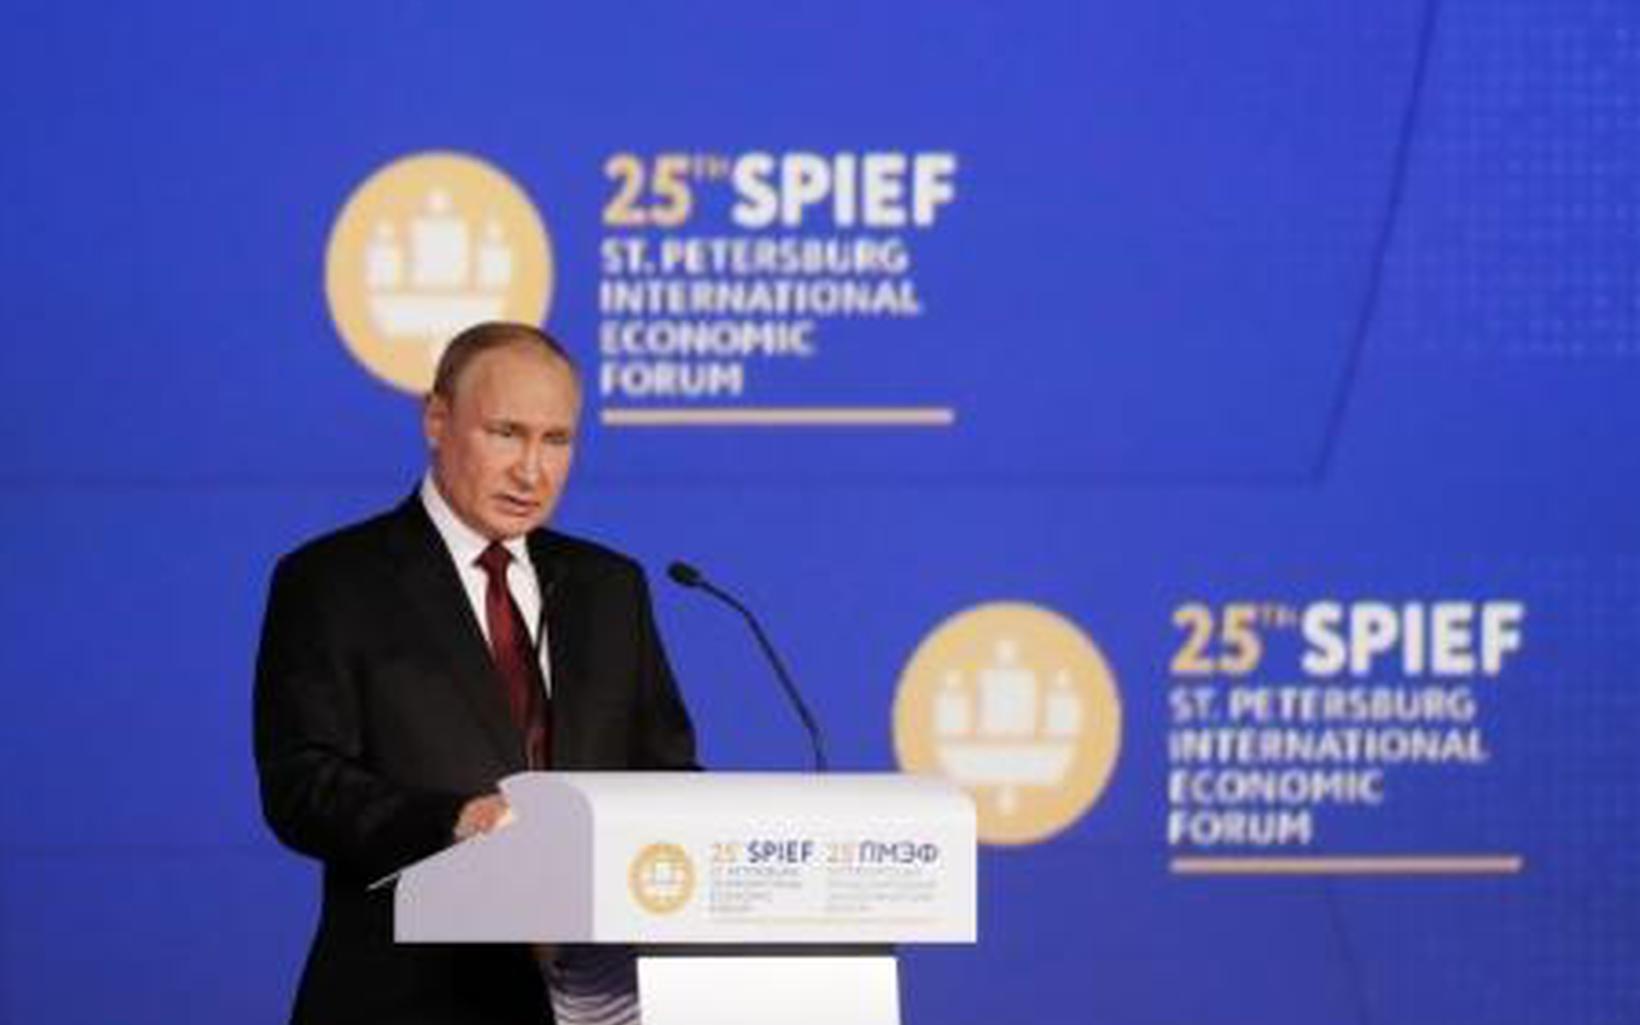 Putin will not attend G20 summit: U.S. media